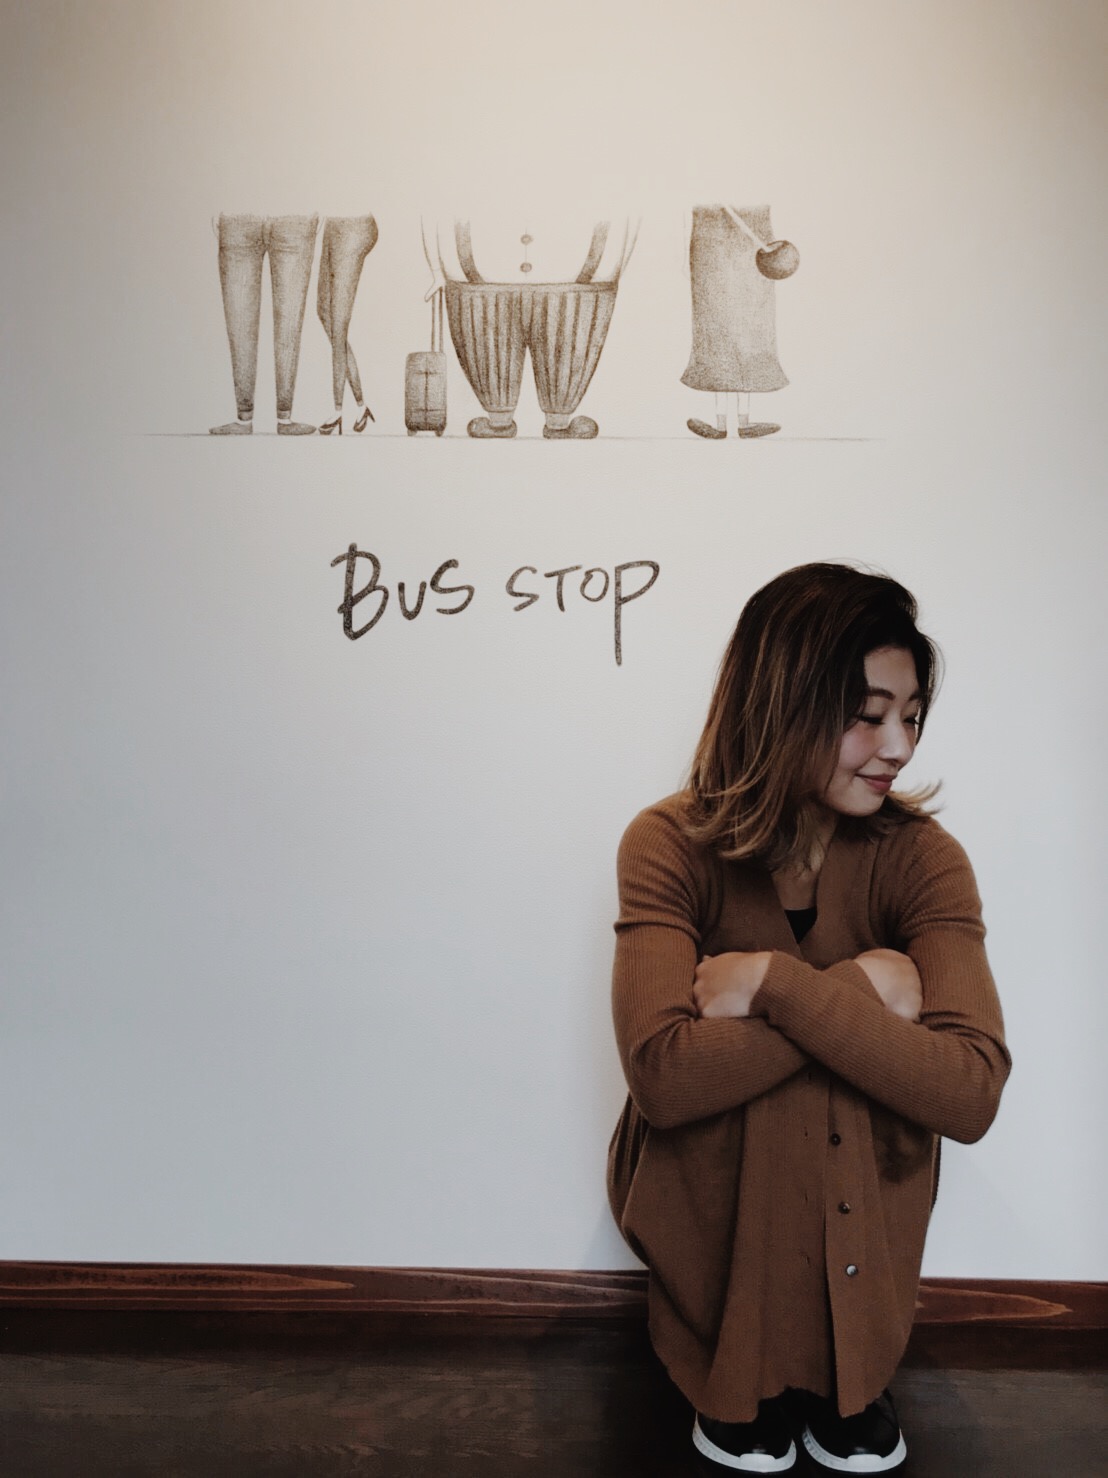 卒業生情報 加西市のカフェ Dining Bus Stop のロゴ イラスト制作に携わりました ビジュアルデザイン学科卒業アーティストmarinaさん 神戸芸術工科大学